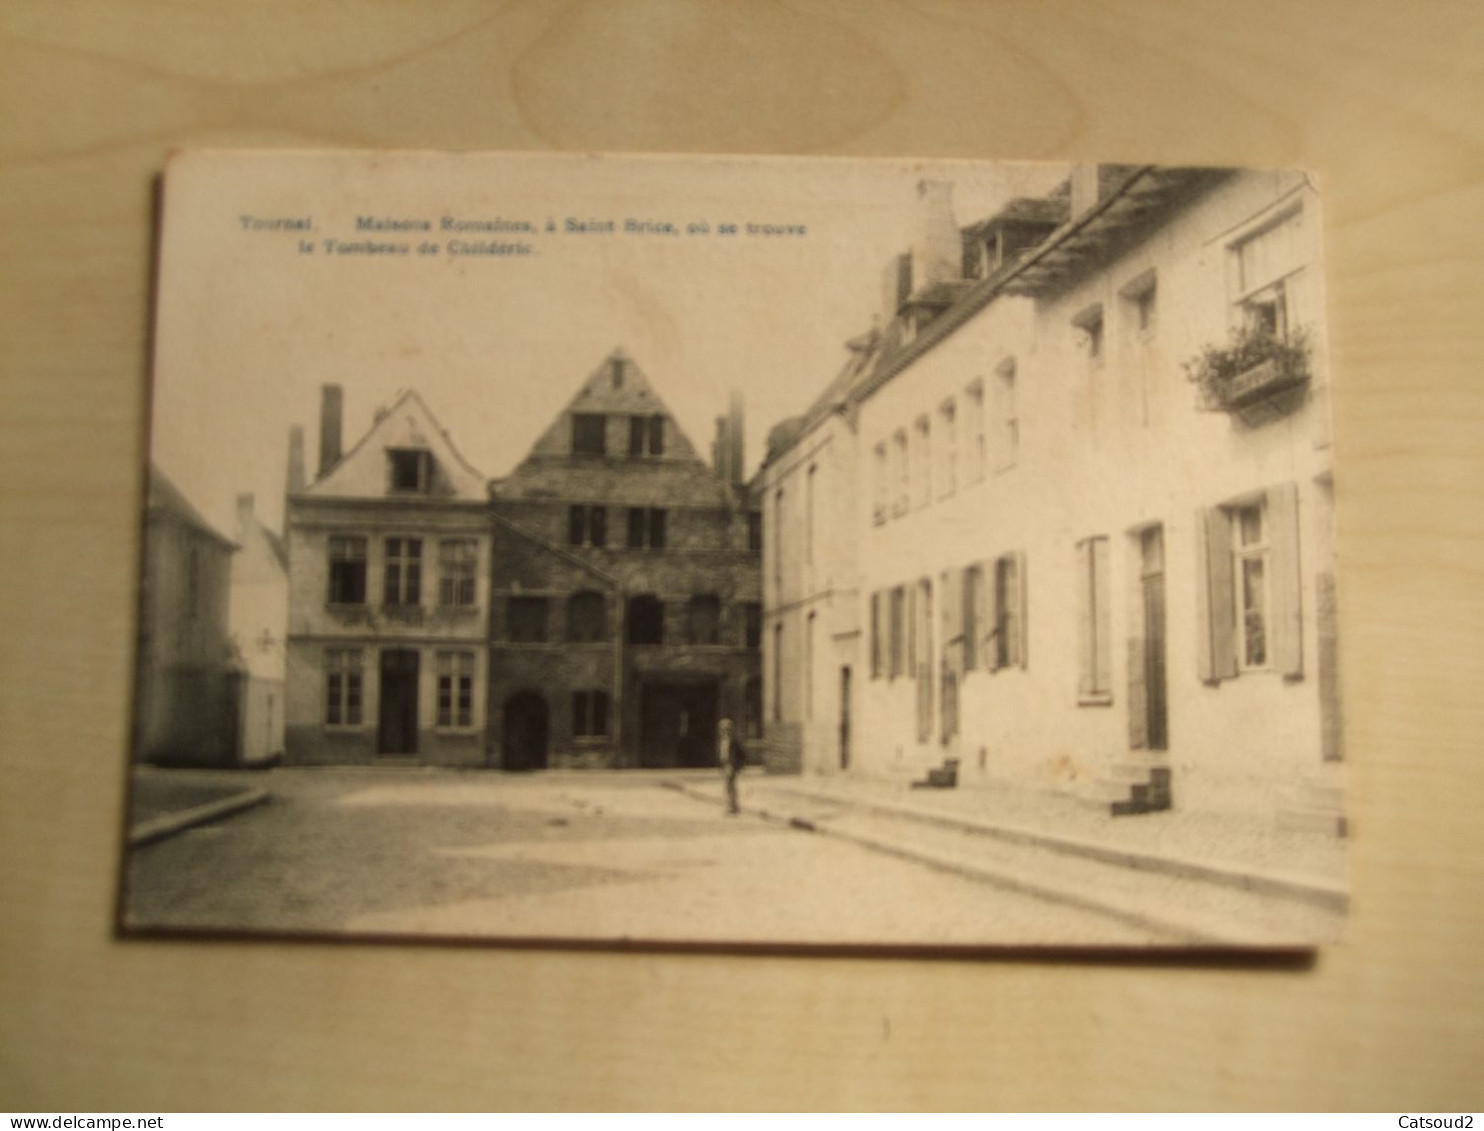 Carte Postale Ancienne  TOURNAI Maisons Romaines à St Brice Où Se Trouve Le Tombeau De Childéric - Tournai